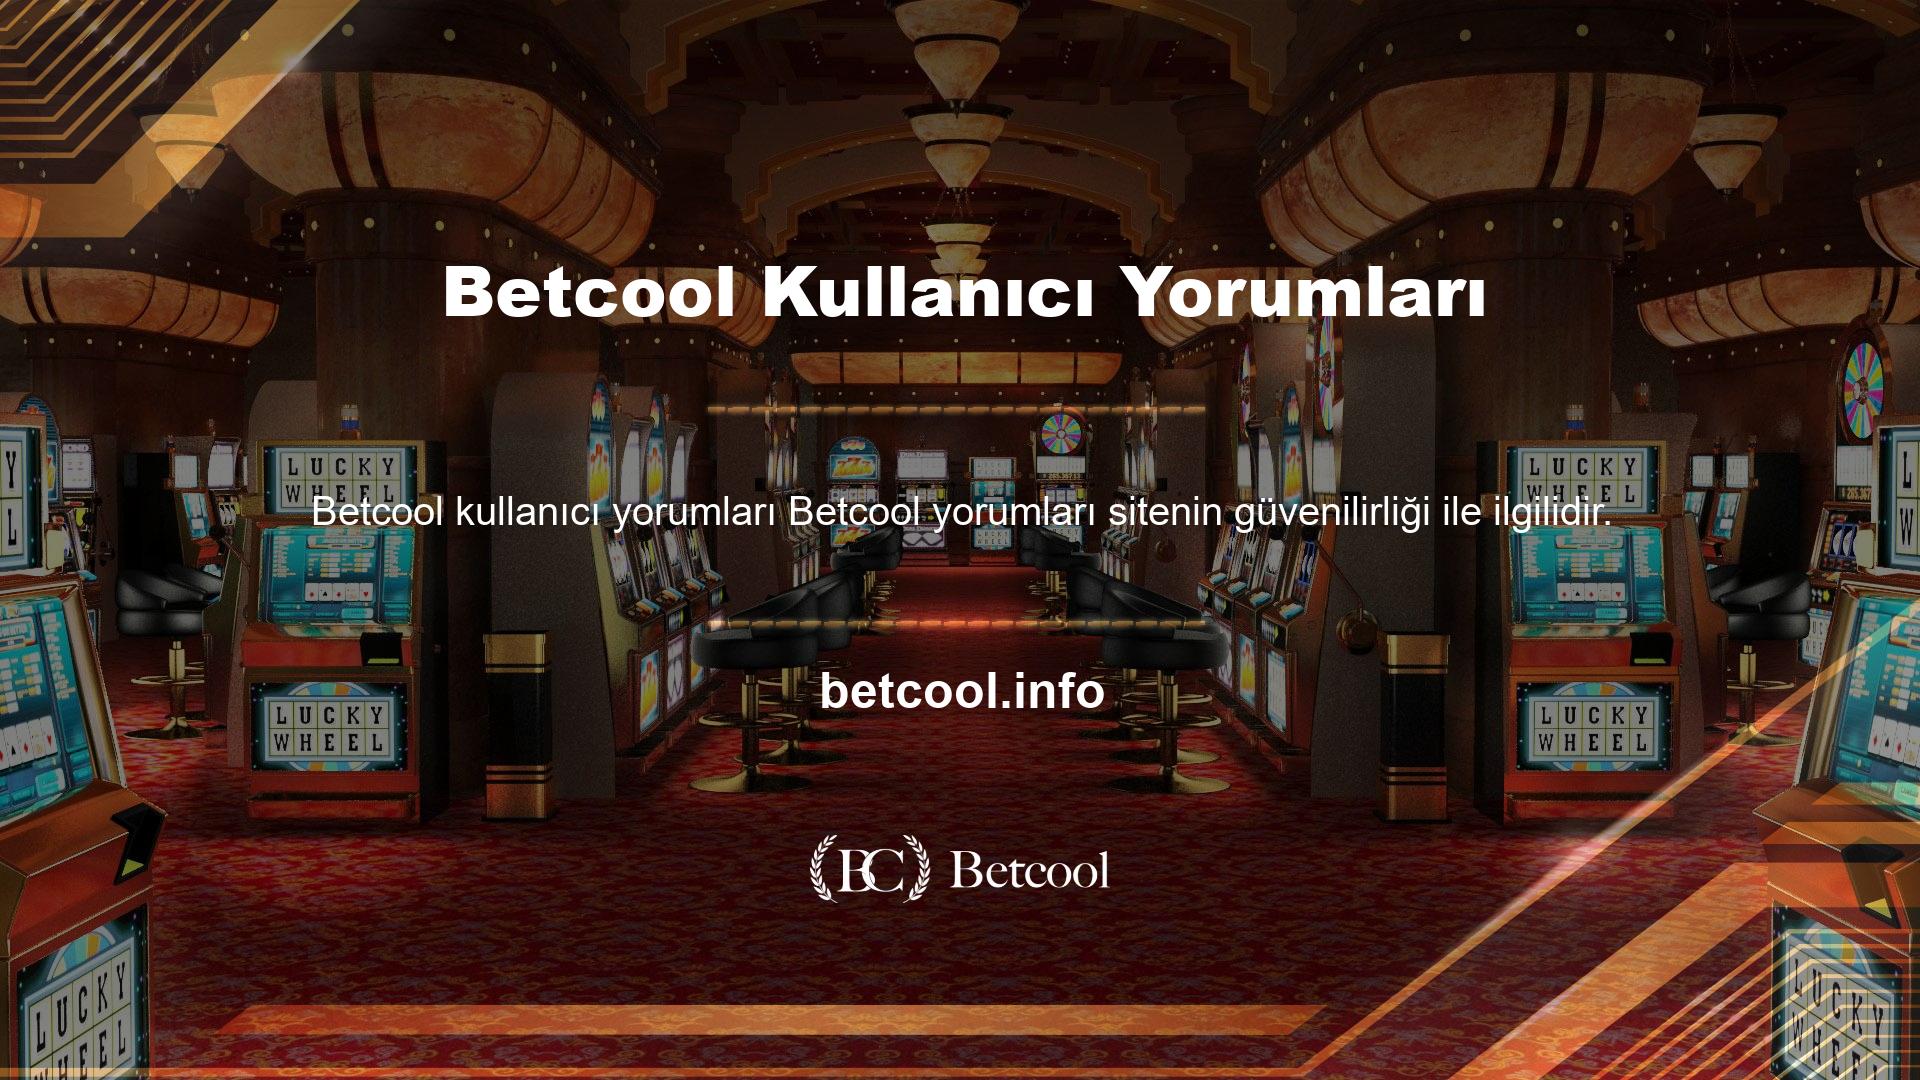 Ayrıntılı platformda kullanıcılar, Betcool bahis sitesinin en güvenilir sitelerden biri olduğunu belirtiyor